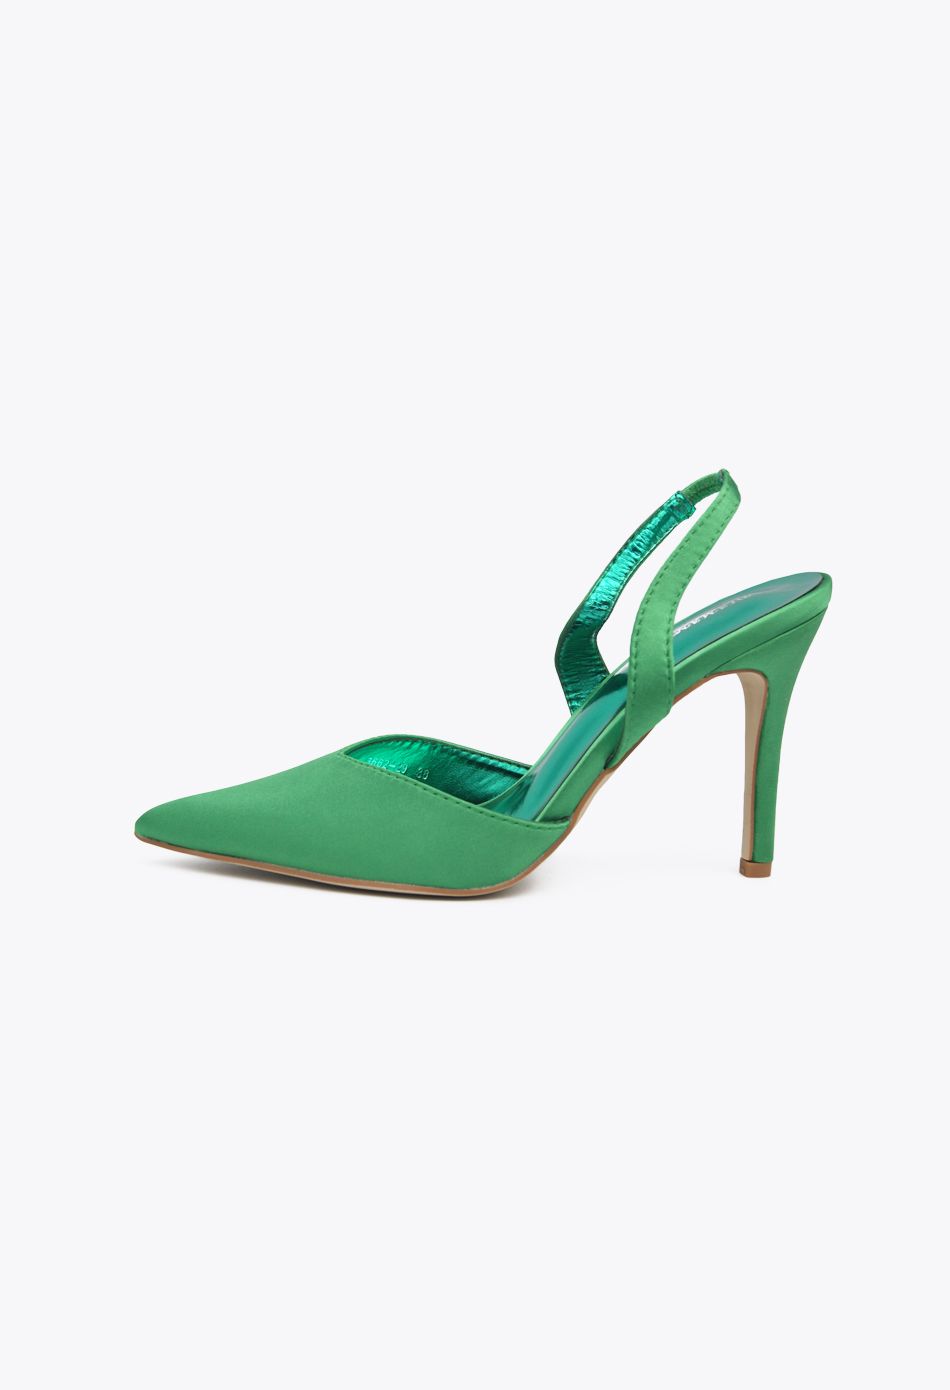 Γόβες Σατέν Open Heel με Λάστιχο Πράσινο / 3662-green Ανοιχτά Παπούτσια joya.gr